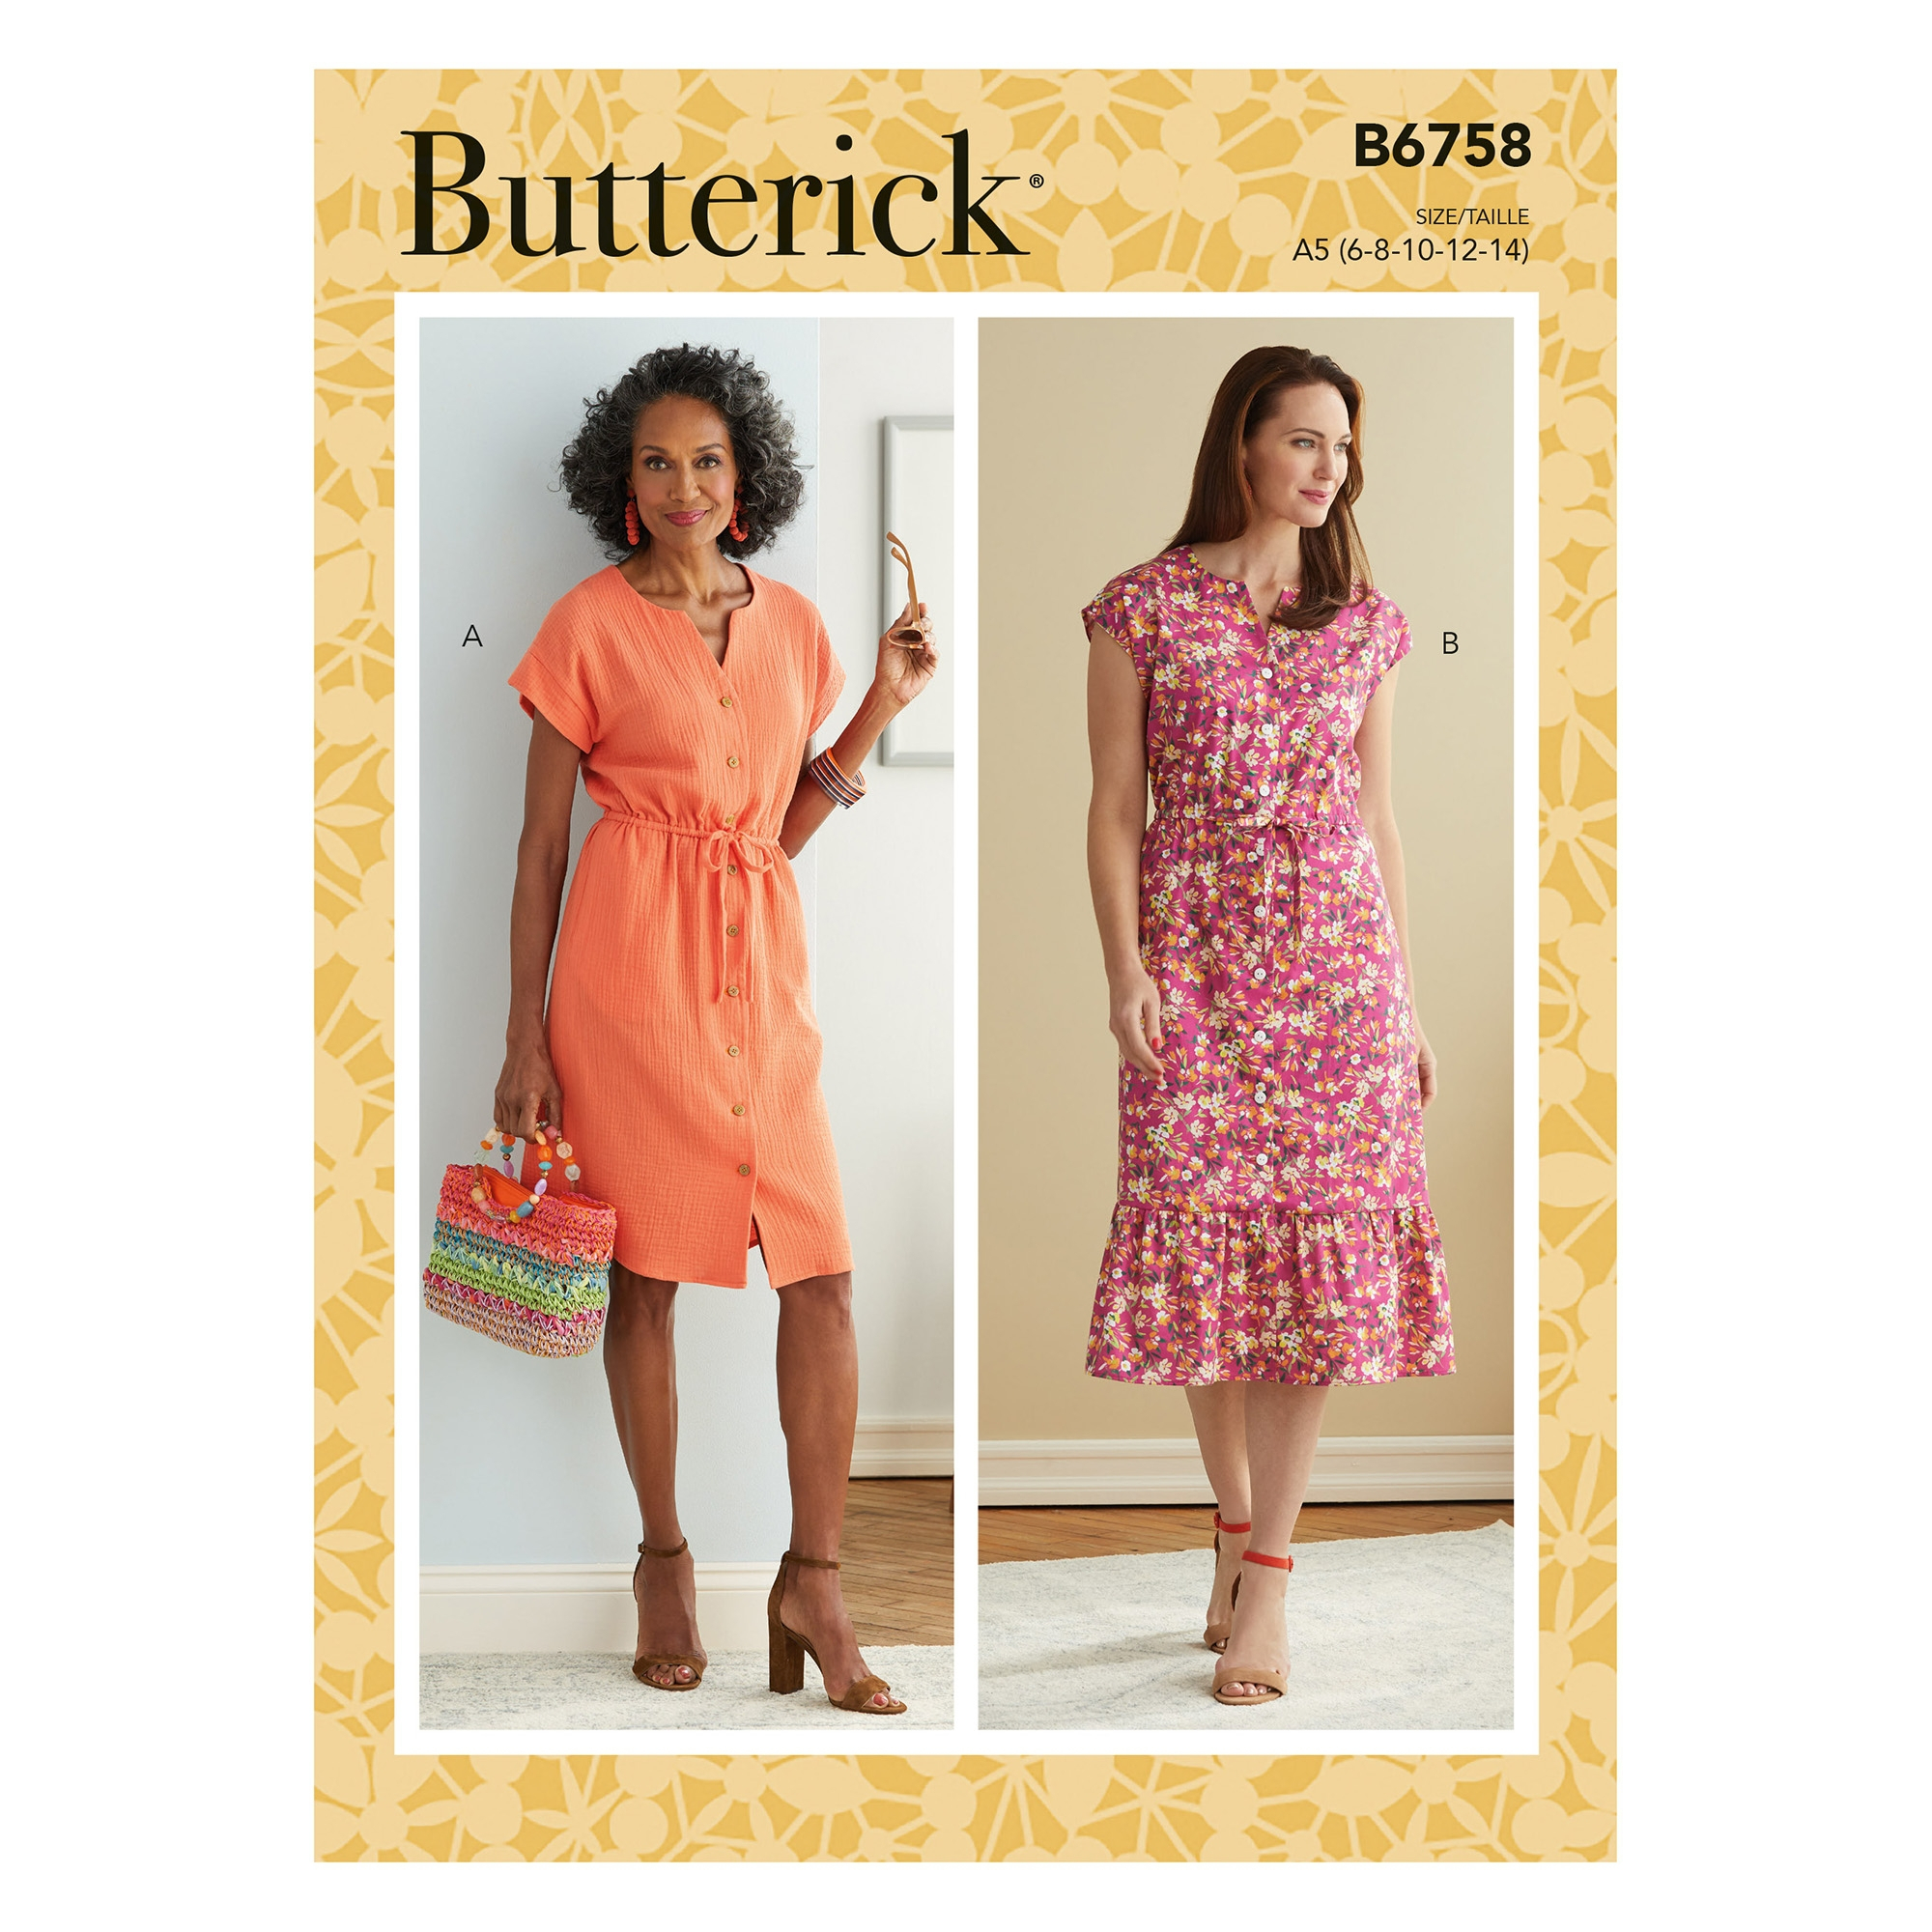 Pattern Butterick 6759 dress, size 32-40, En/Ger/Fr